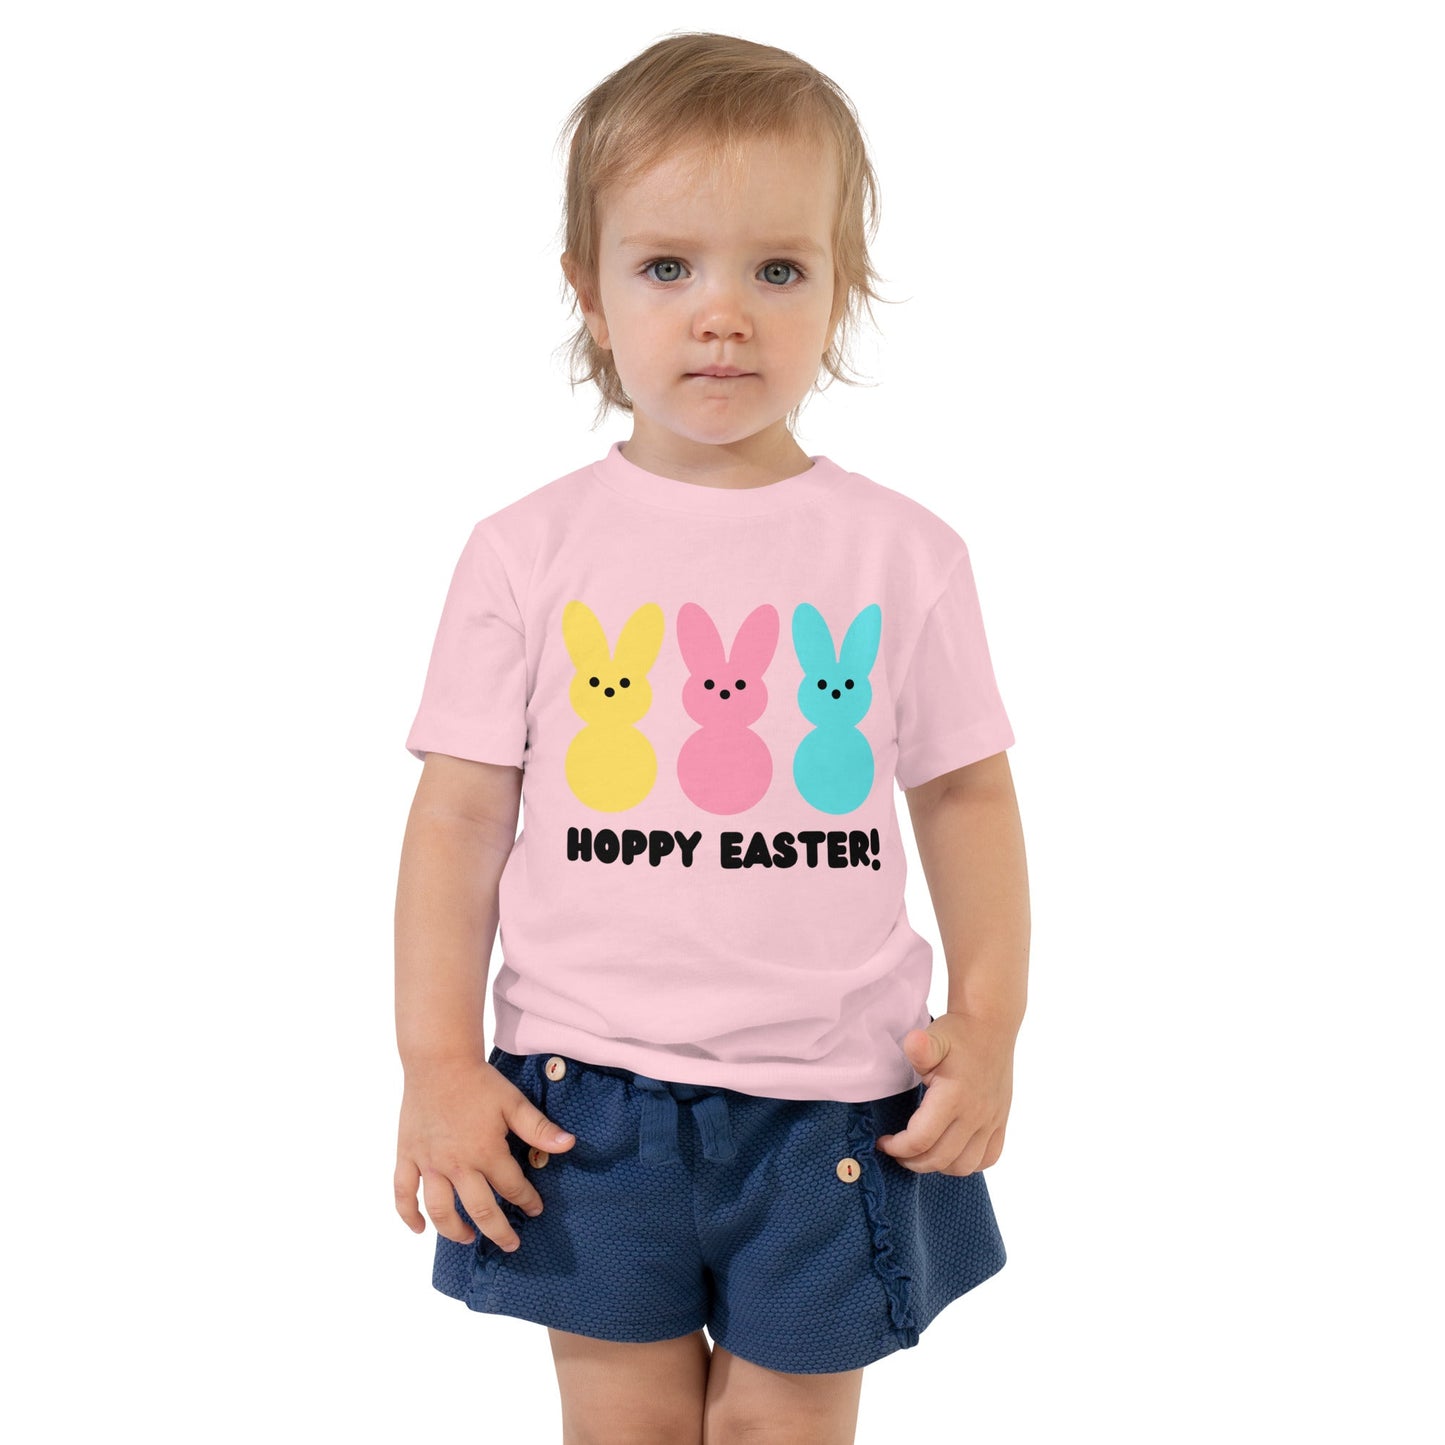 Hoppy Easter! | Toddler Short Sleeve Tee